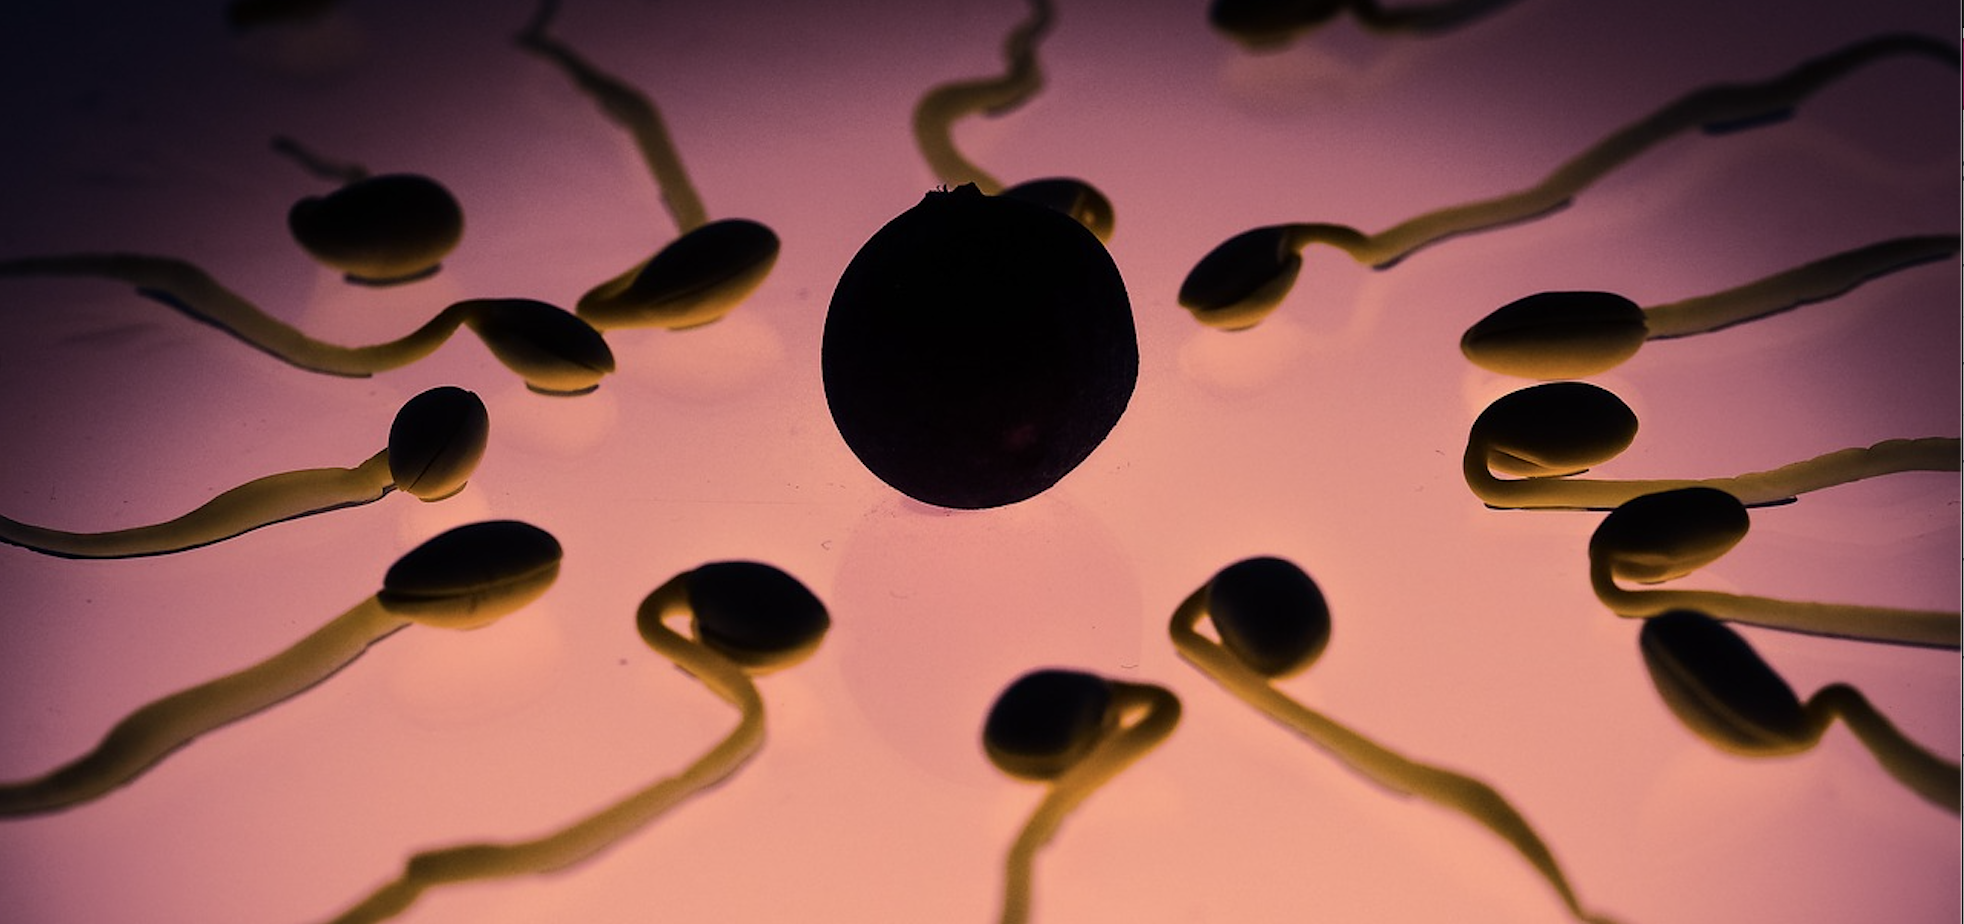 sperm egg plants